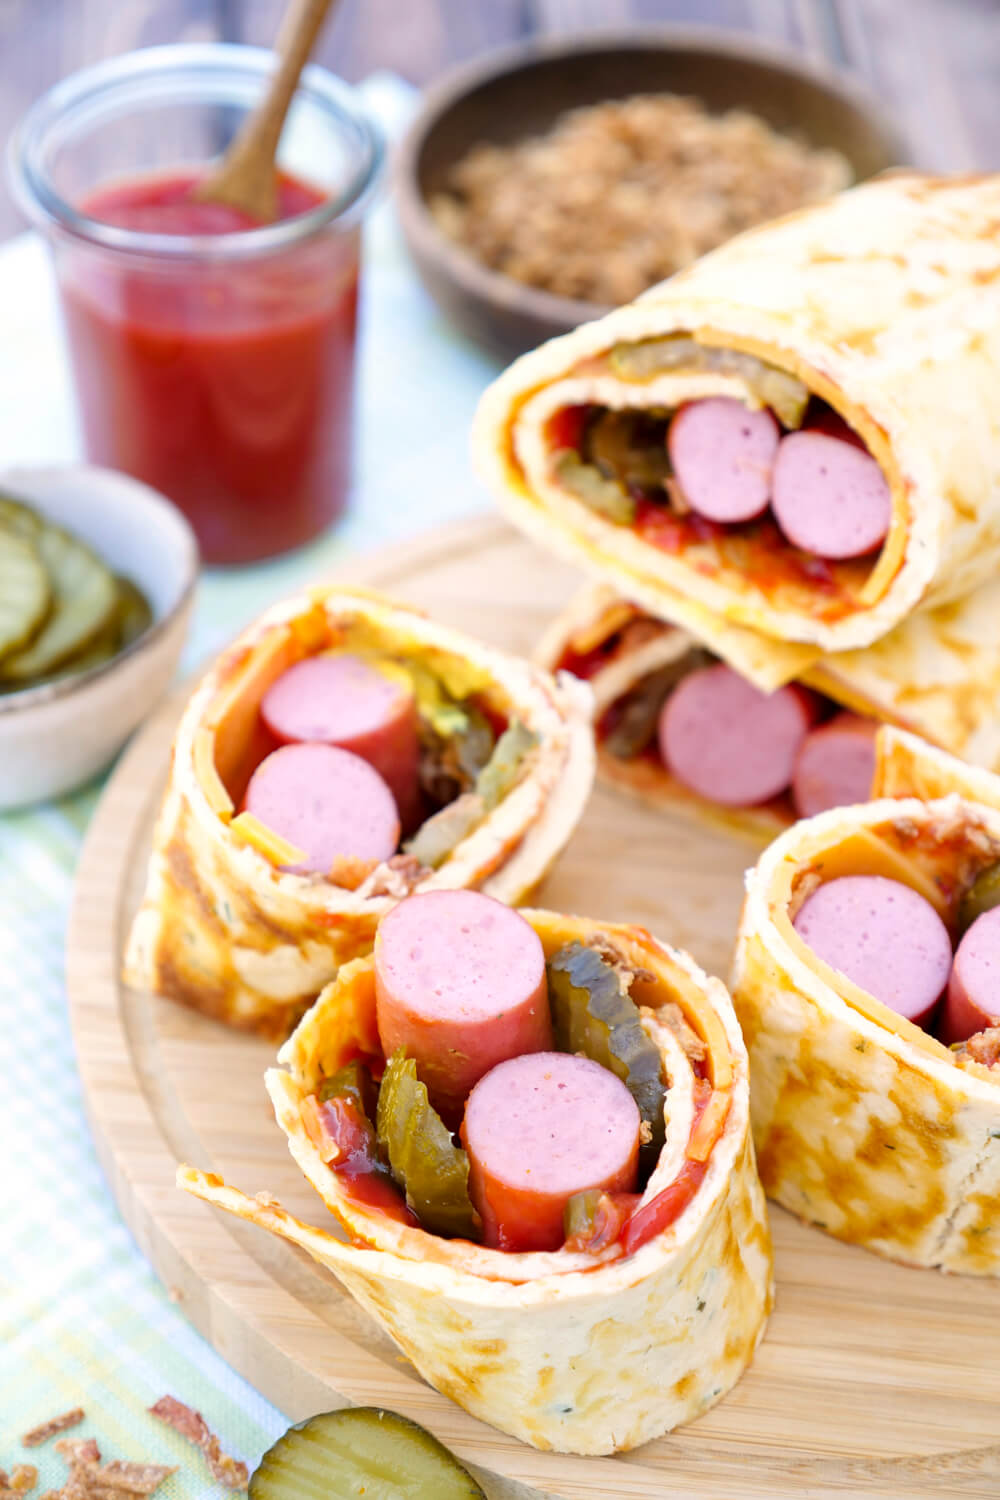 Low Carb Wrap im Hotdog Style - Hotdog Rolle mit Wiener Würstchen, Gurken und Röstzwiebeln